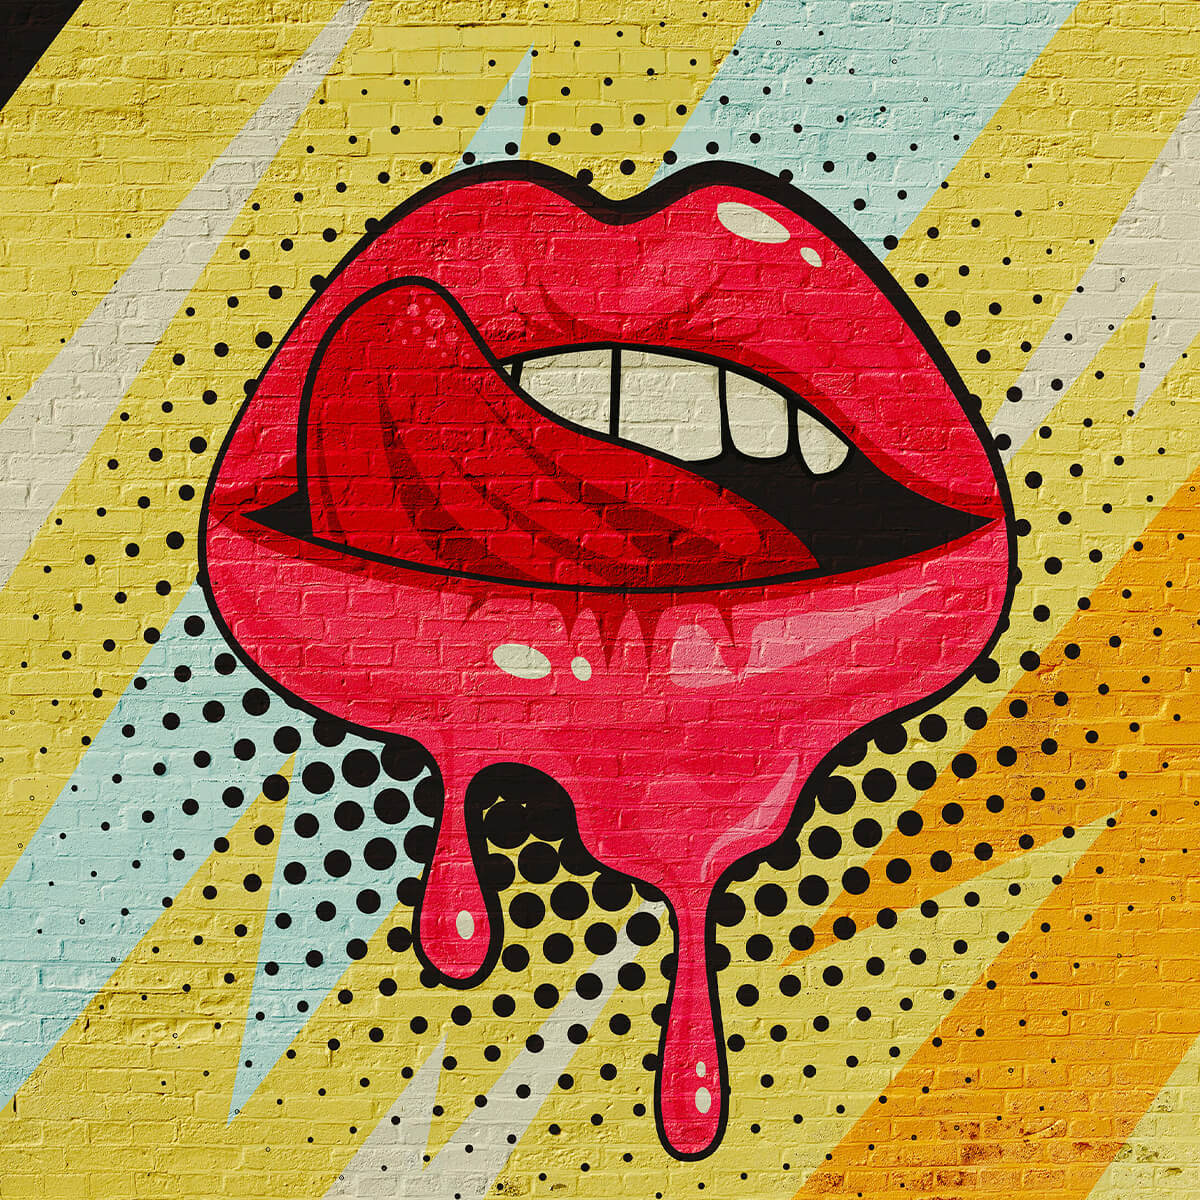 Graffiti of mouth